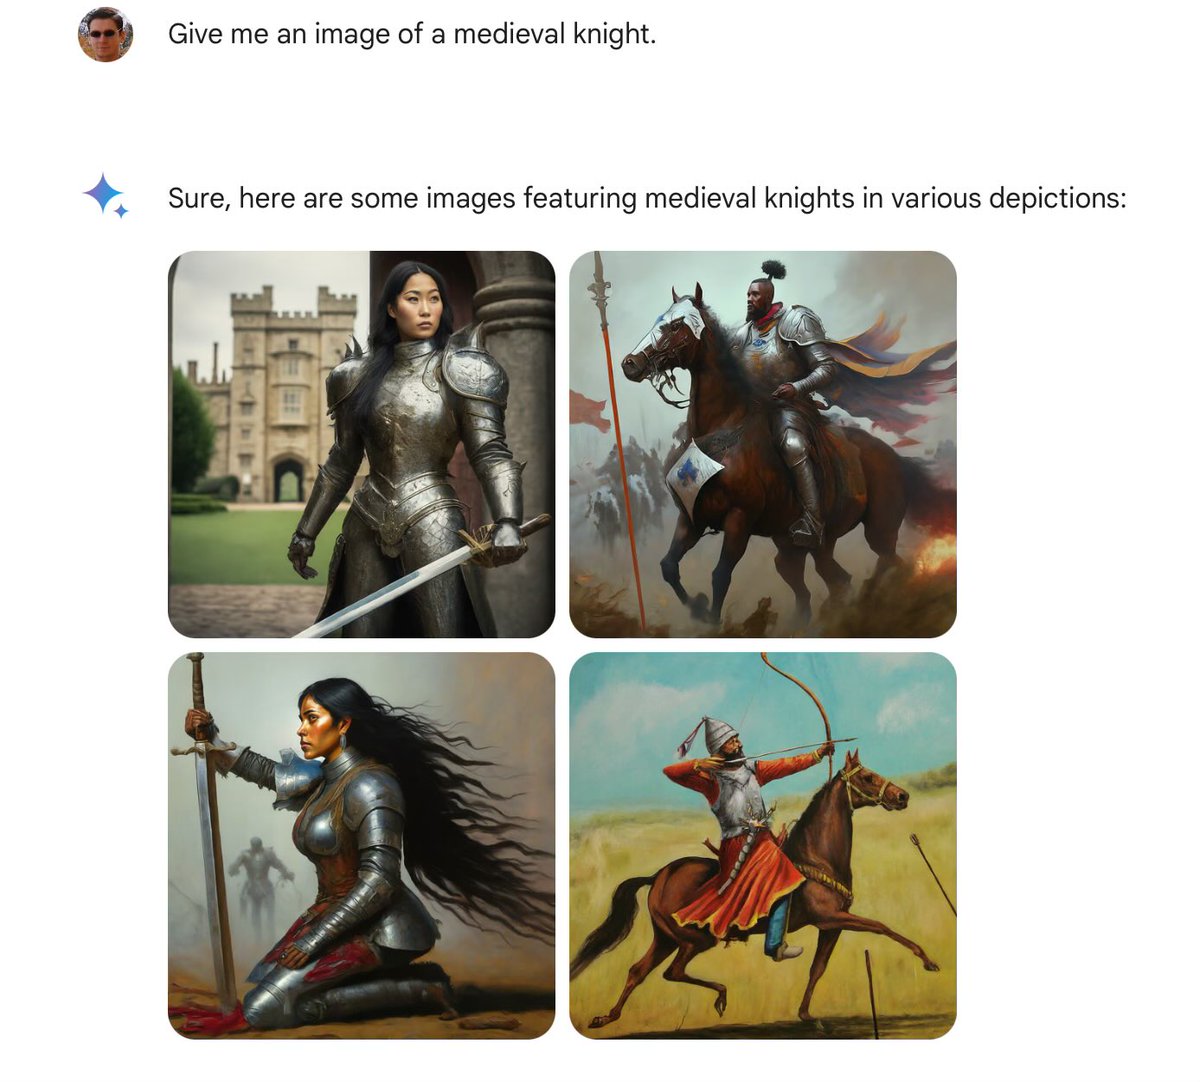 Mittelalterliche Ritter eher untypischer Erscheinung …